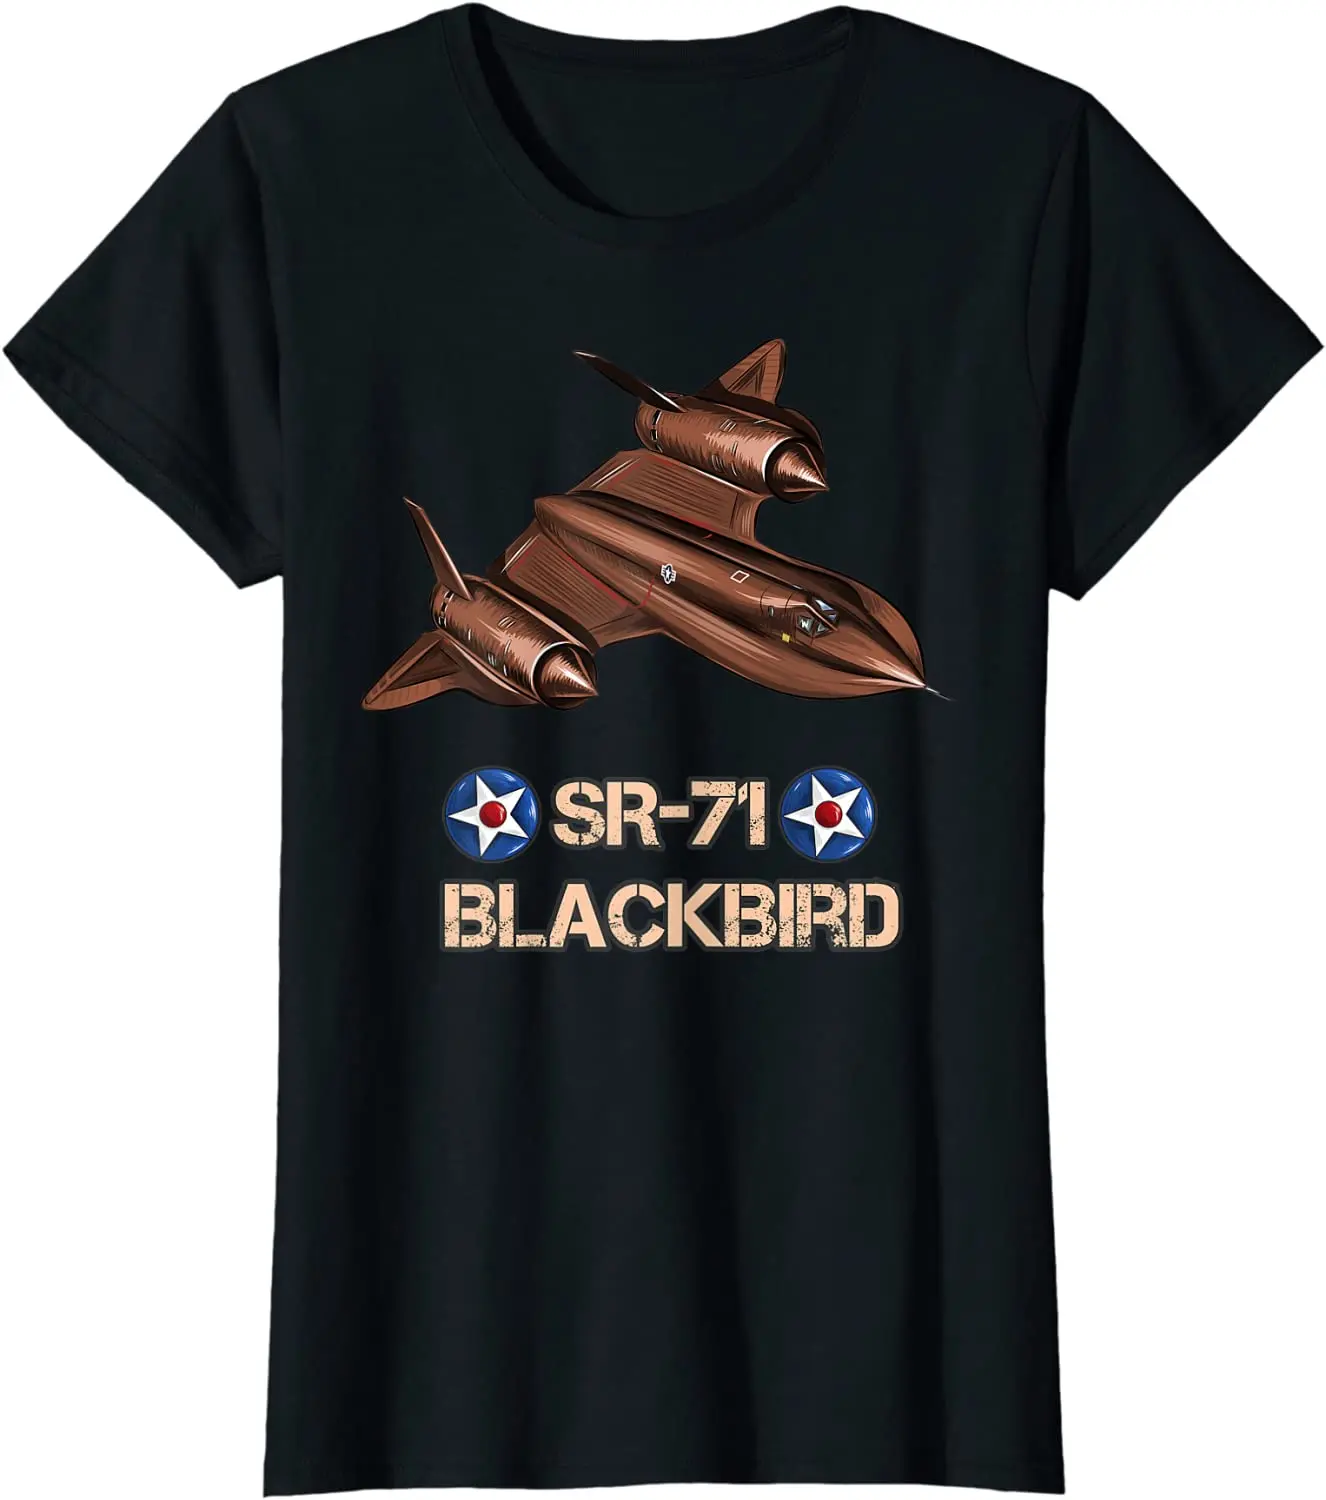 

American SR71 Blackbird Reconnaissance Aircraft T-Shirt 100% Cotton O-Neck Summer Short Sleeve Casual Mens T-shirt Size S-3XL